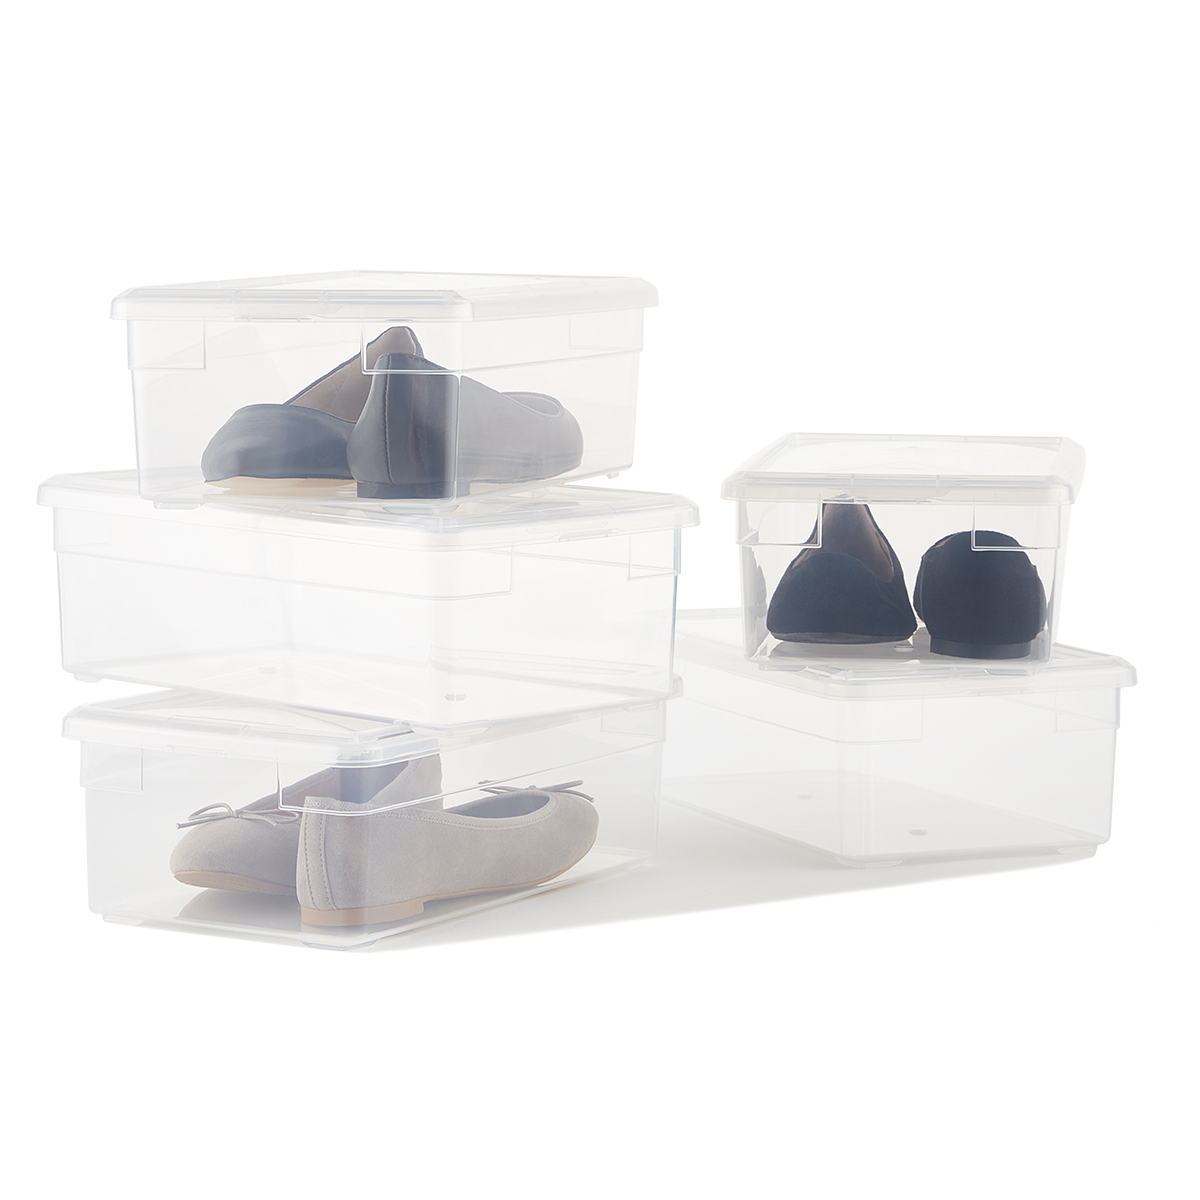 Shoe Box - Our Clear Plastic Shoe Box 